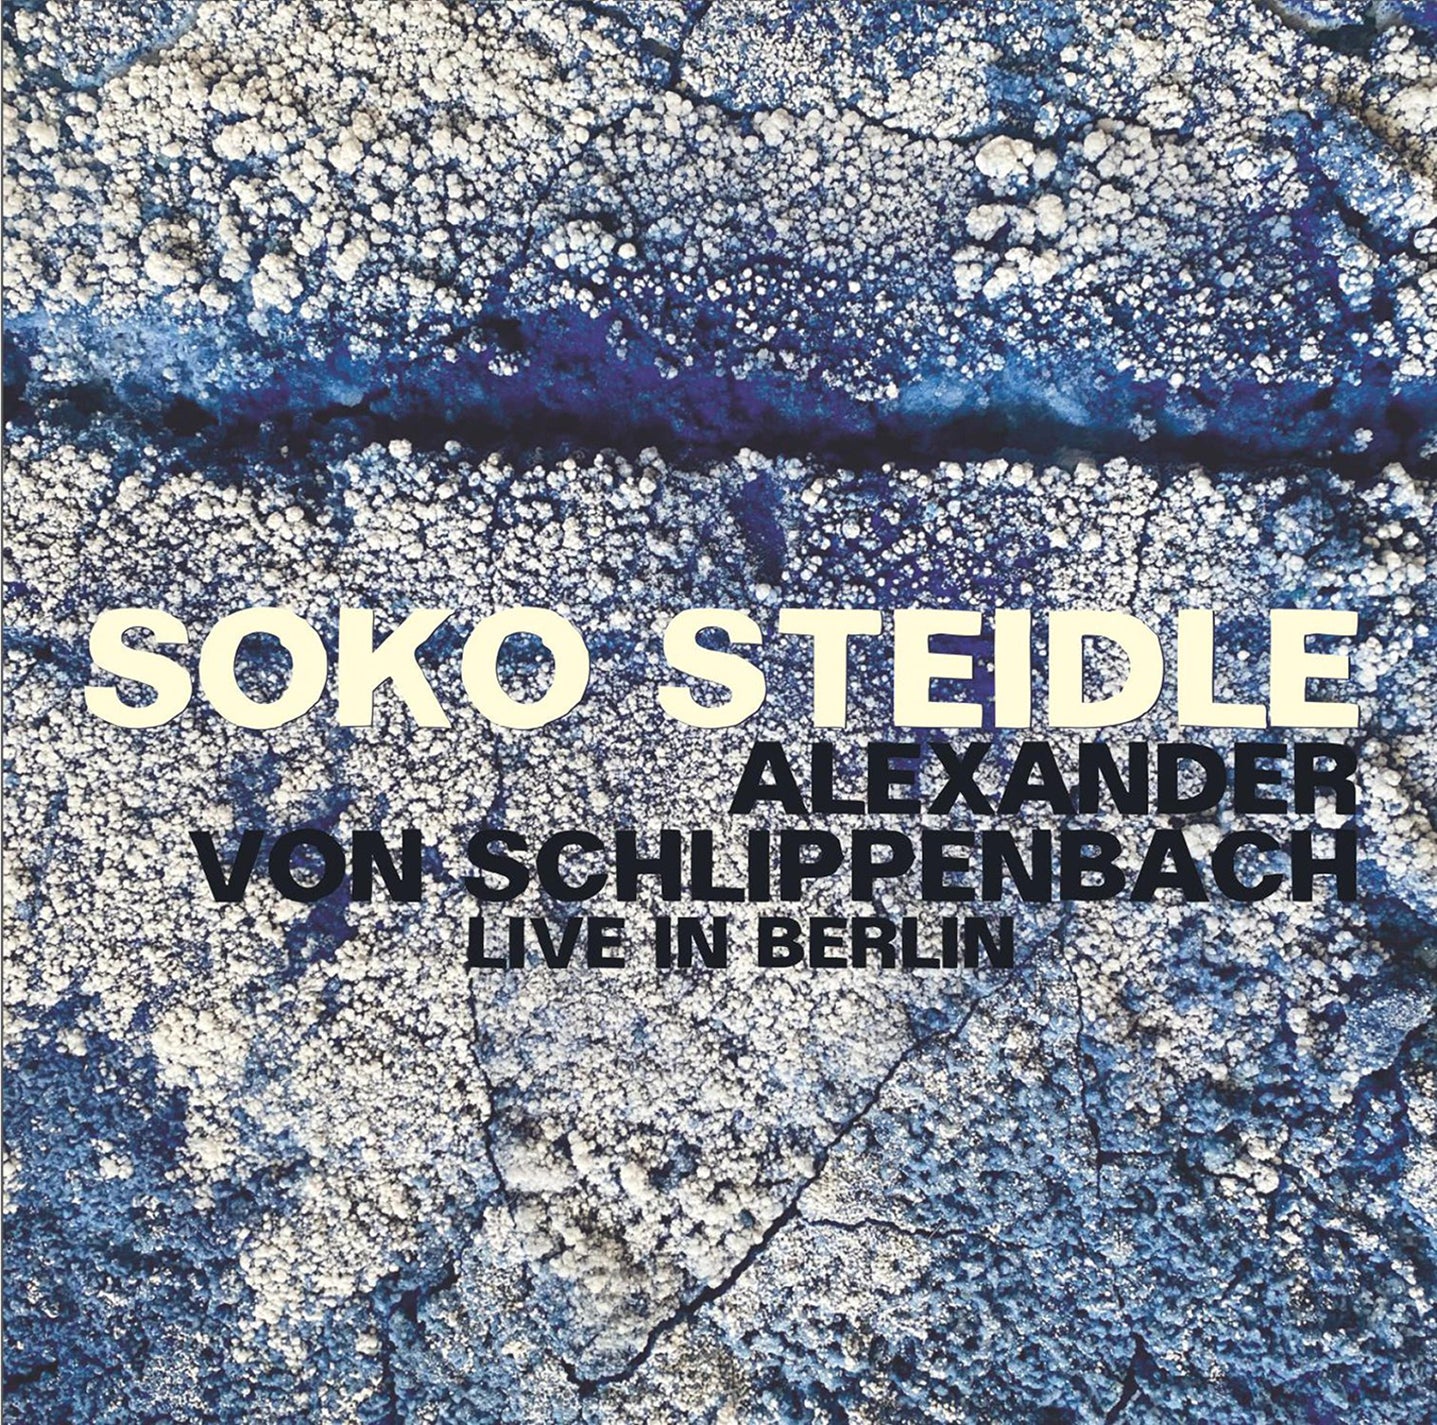 Live in Berlin / SoKo Steidle + Alexander von Schlippenbach